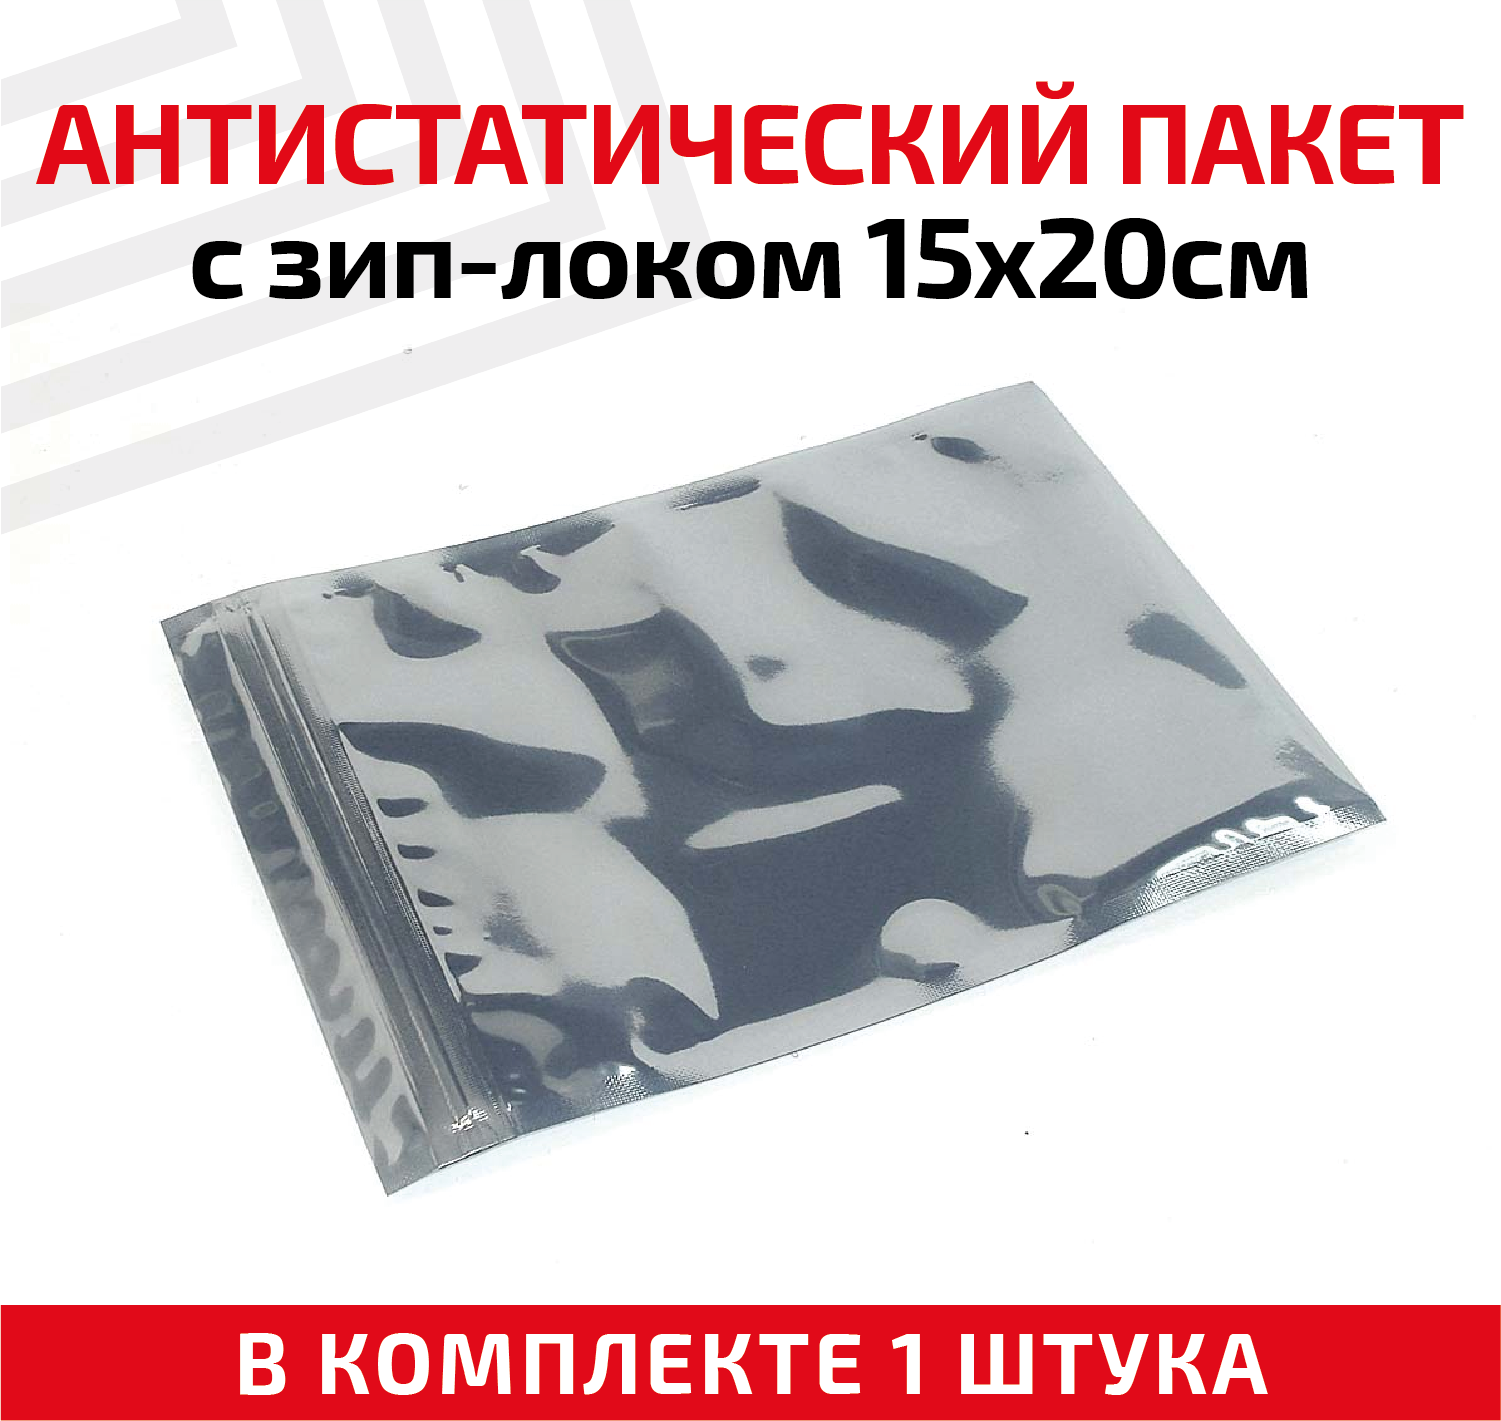 Пакет антистатический с зип-локом 15х20см